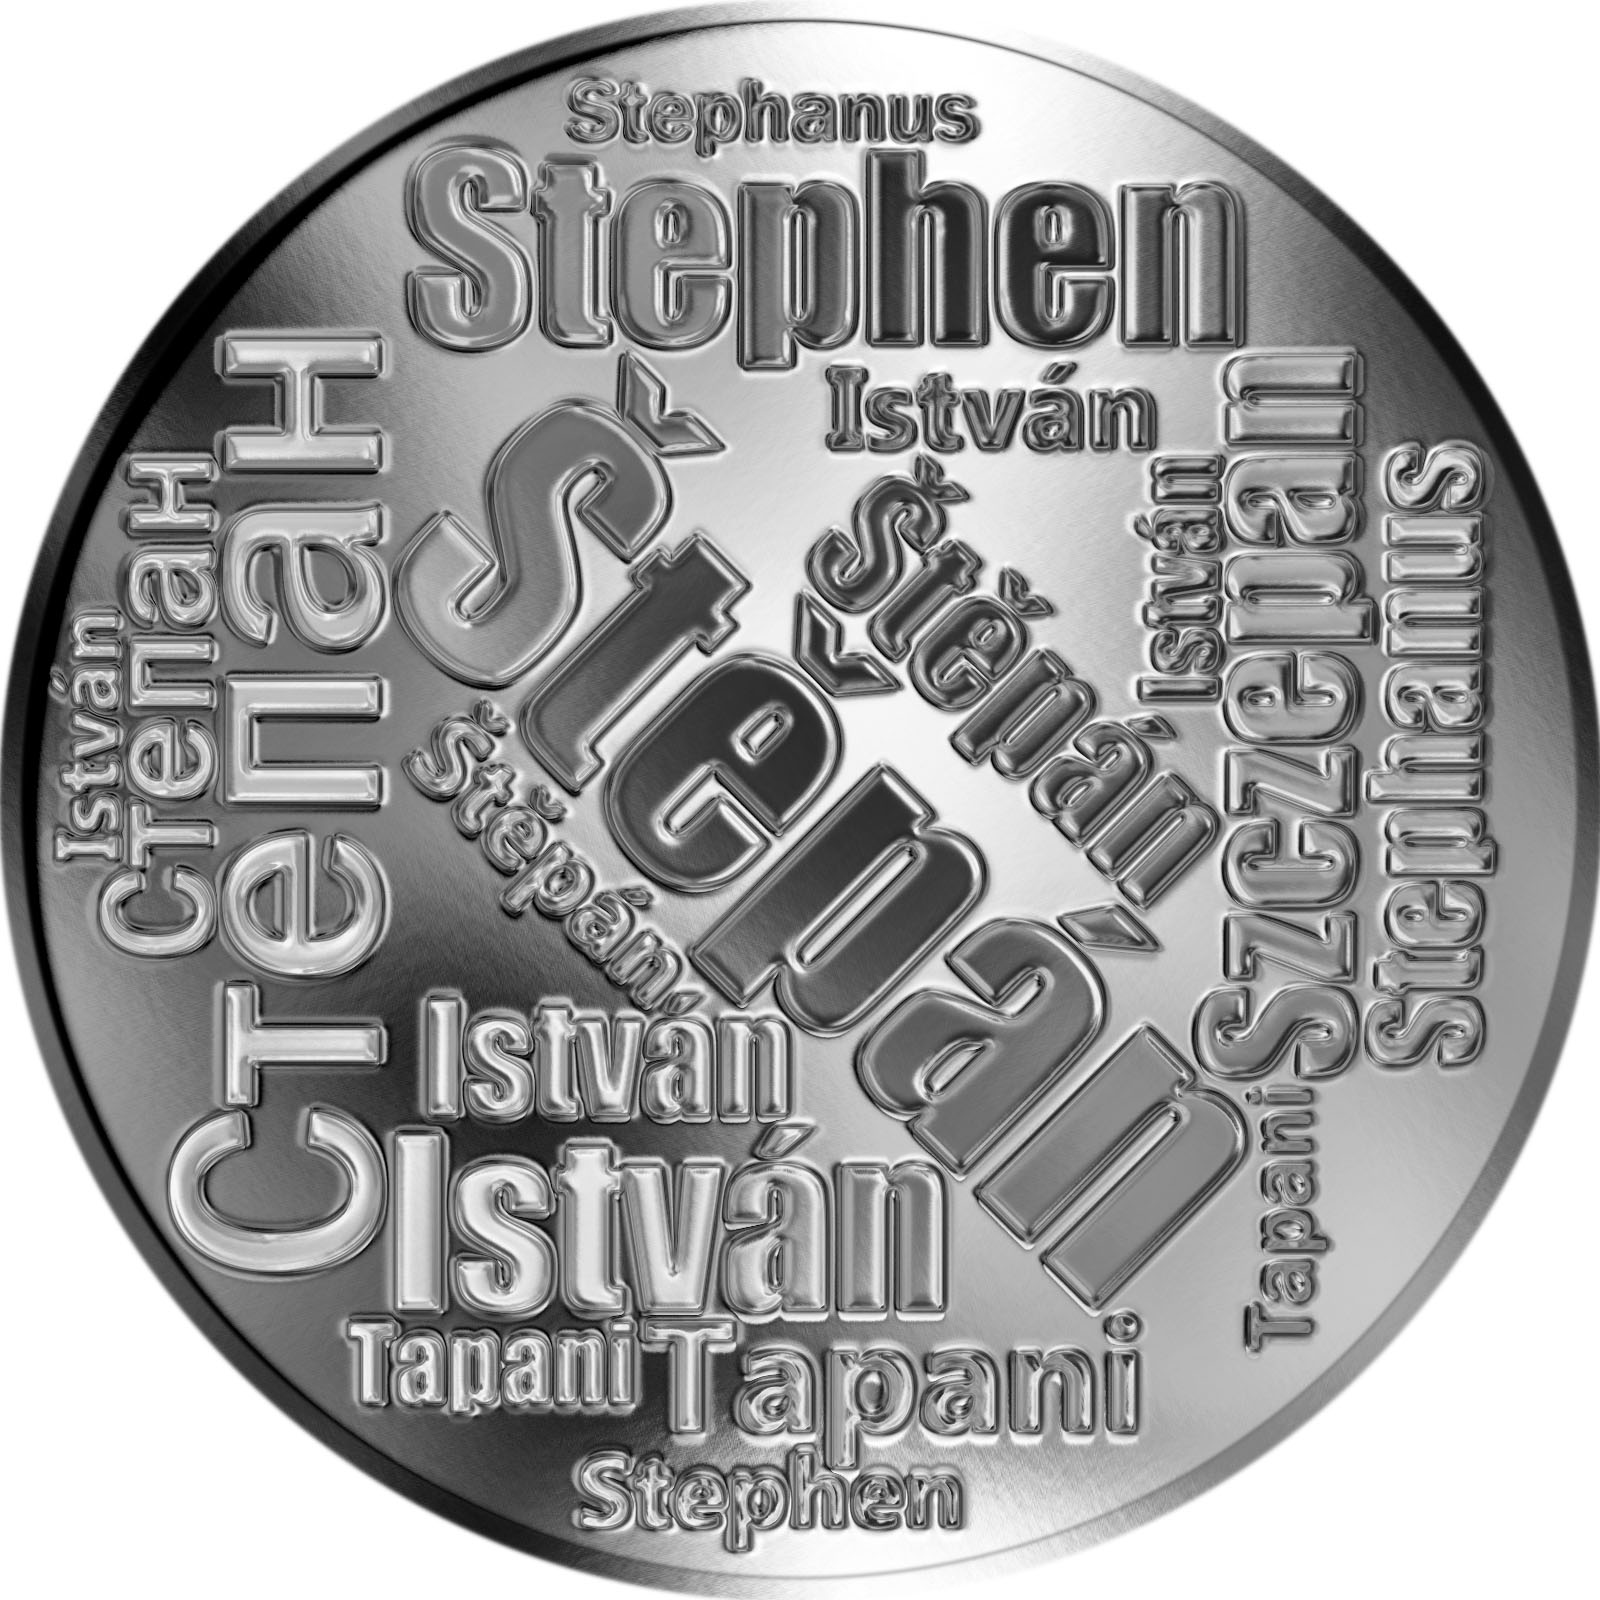 Jaký má význam jméno Štěpán?